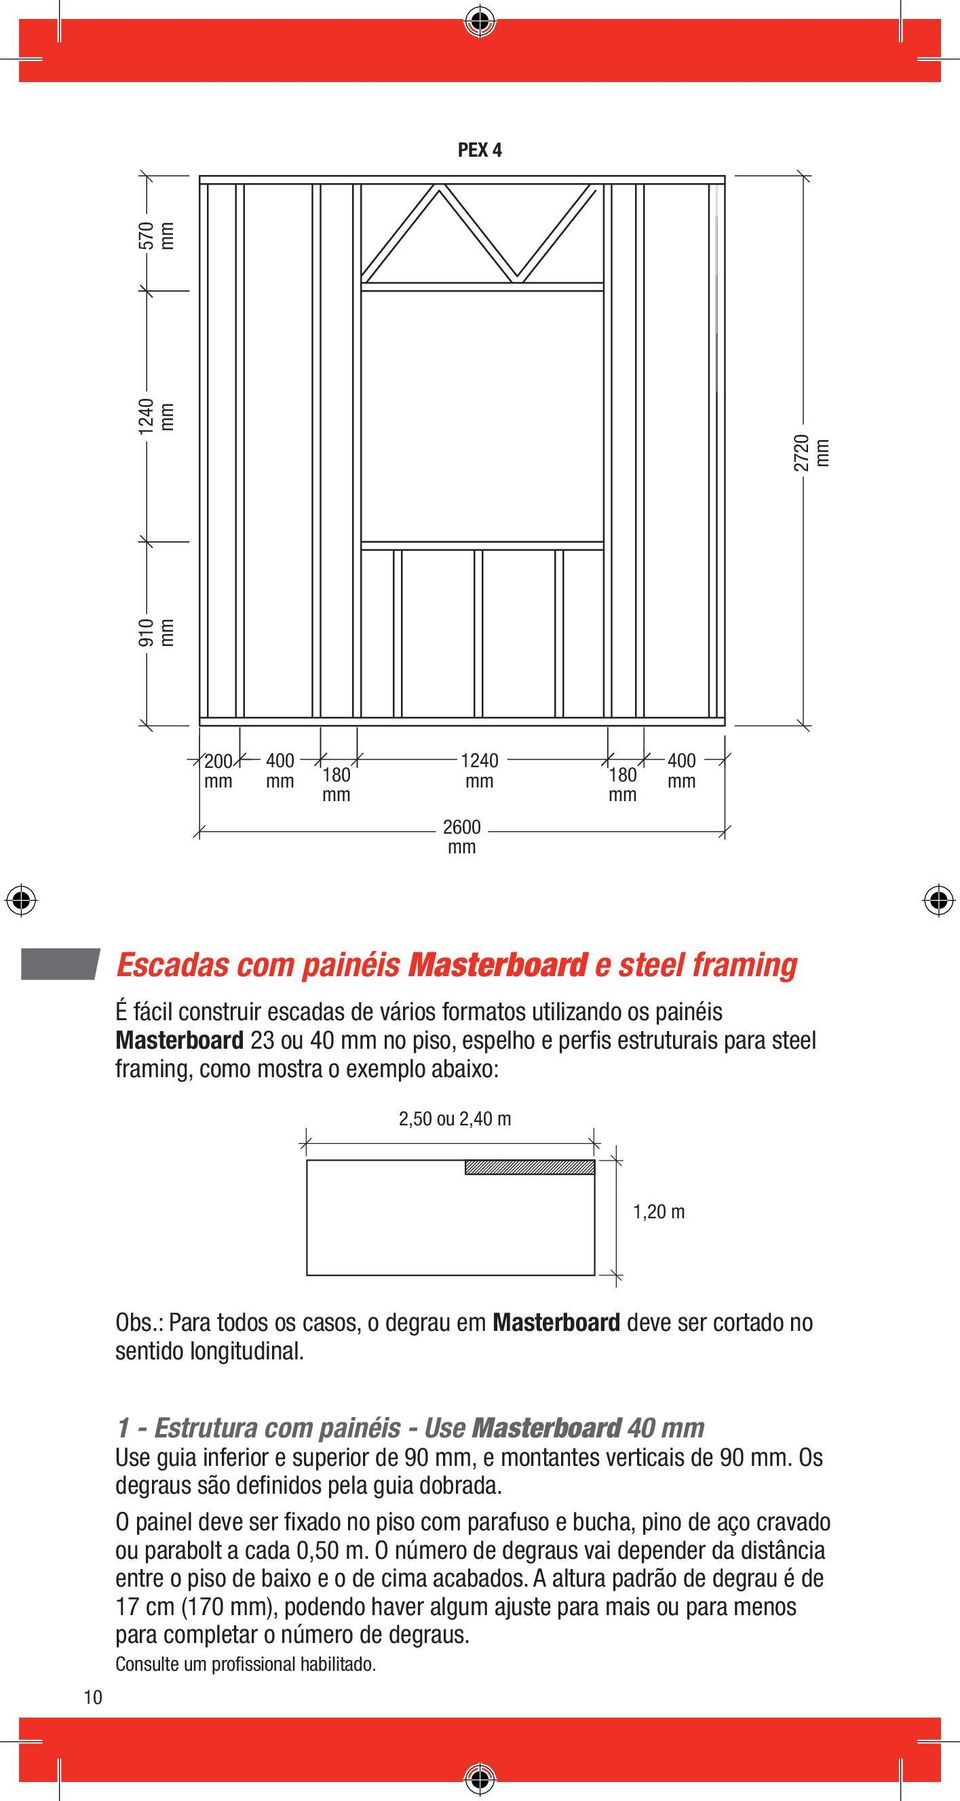 10 1 - Estrutura com painéis - Use Masterboard 40 Use guia inferior e superior de 90, e montantes verticais de 90. Os degraus são definidos pela guia dobrada.